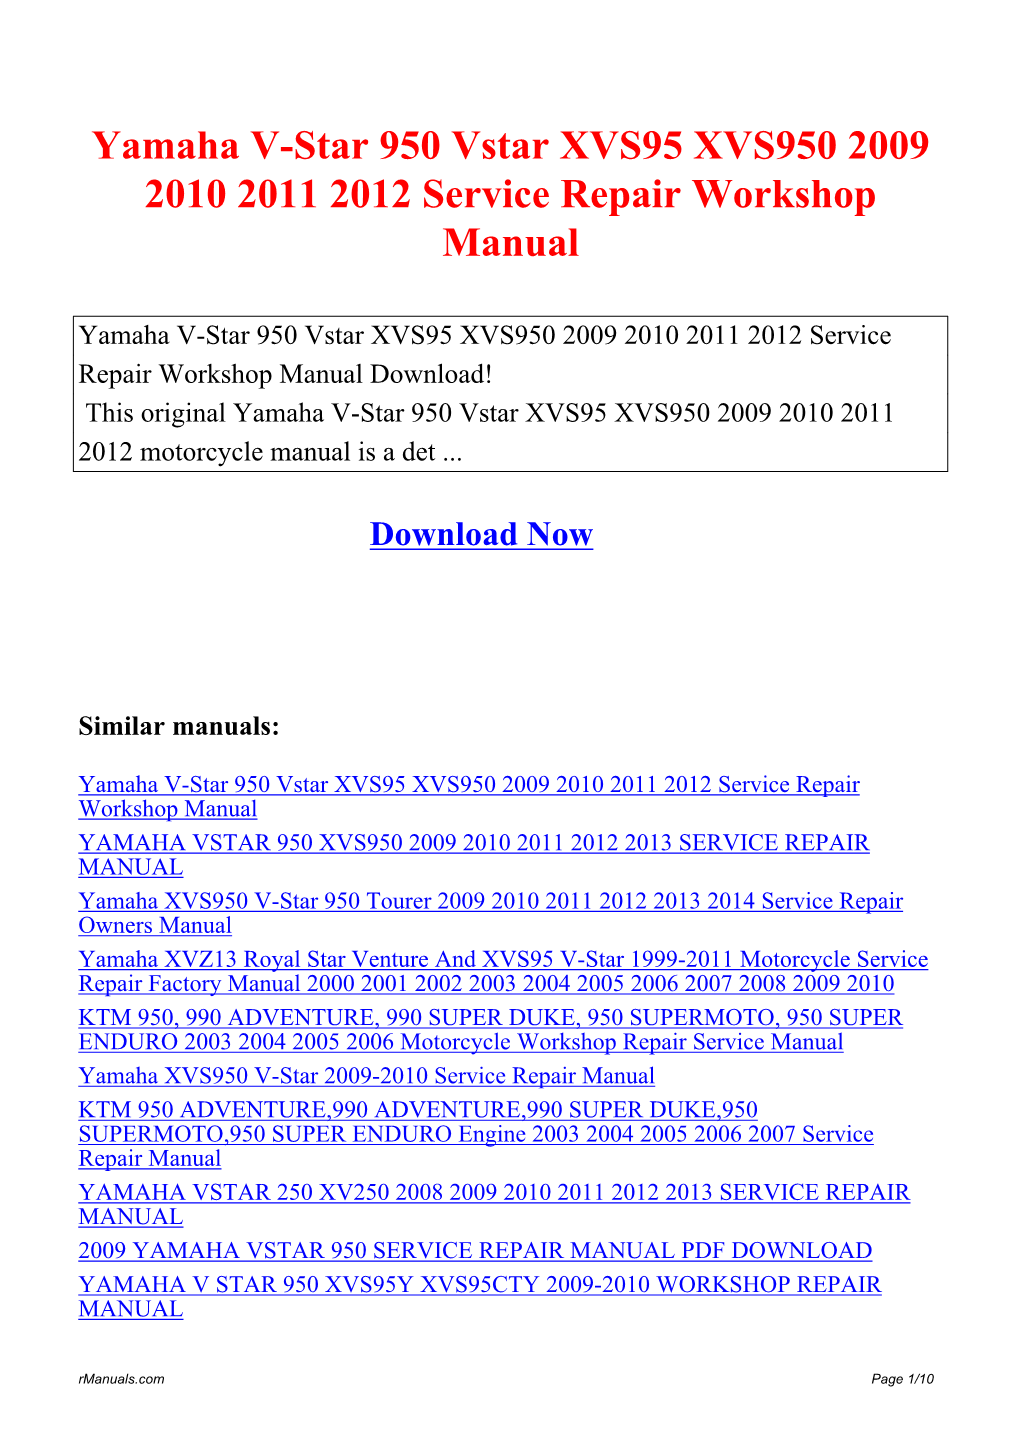 Yamaha V-Star 950 Vstar XVS95 XVS950 2009 2010 2011 2012 Service Repair Workshop Manual